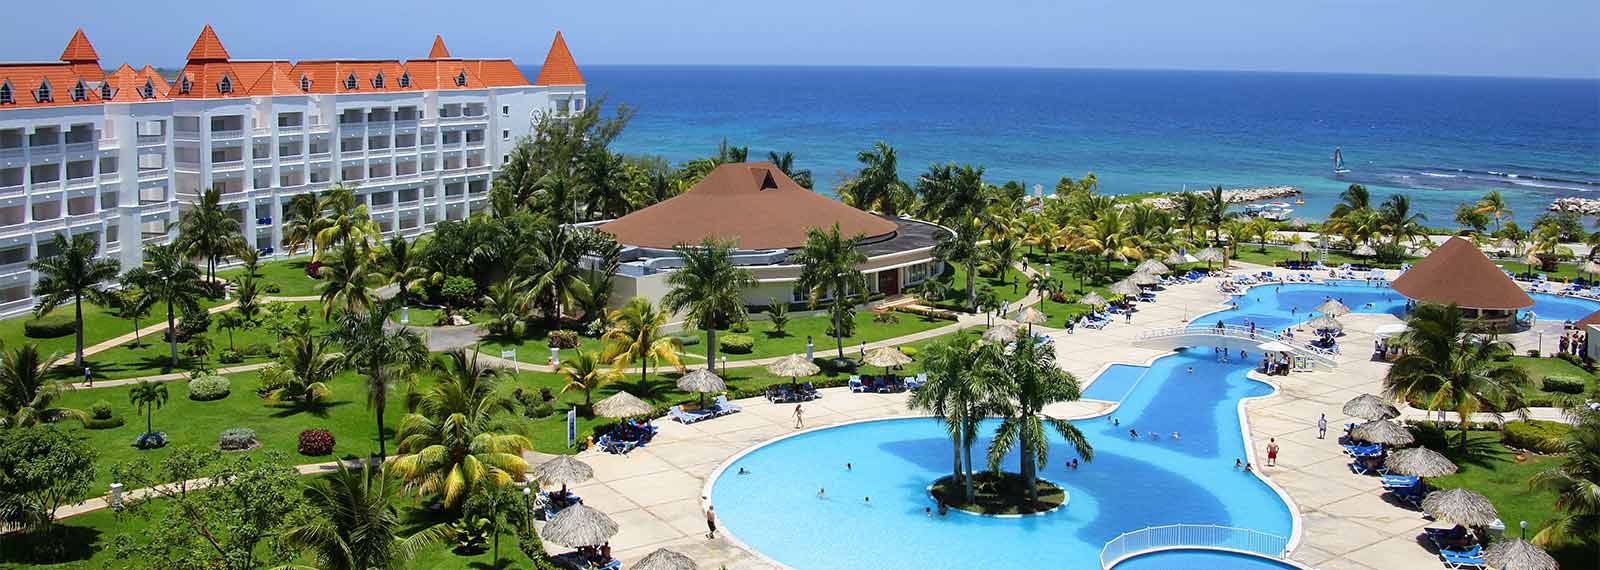 Bahia Principe Grand Jamaica Bahia Principe Hotels